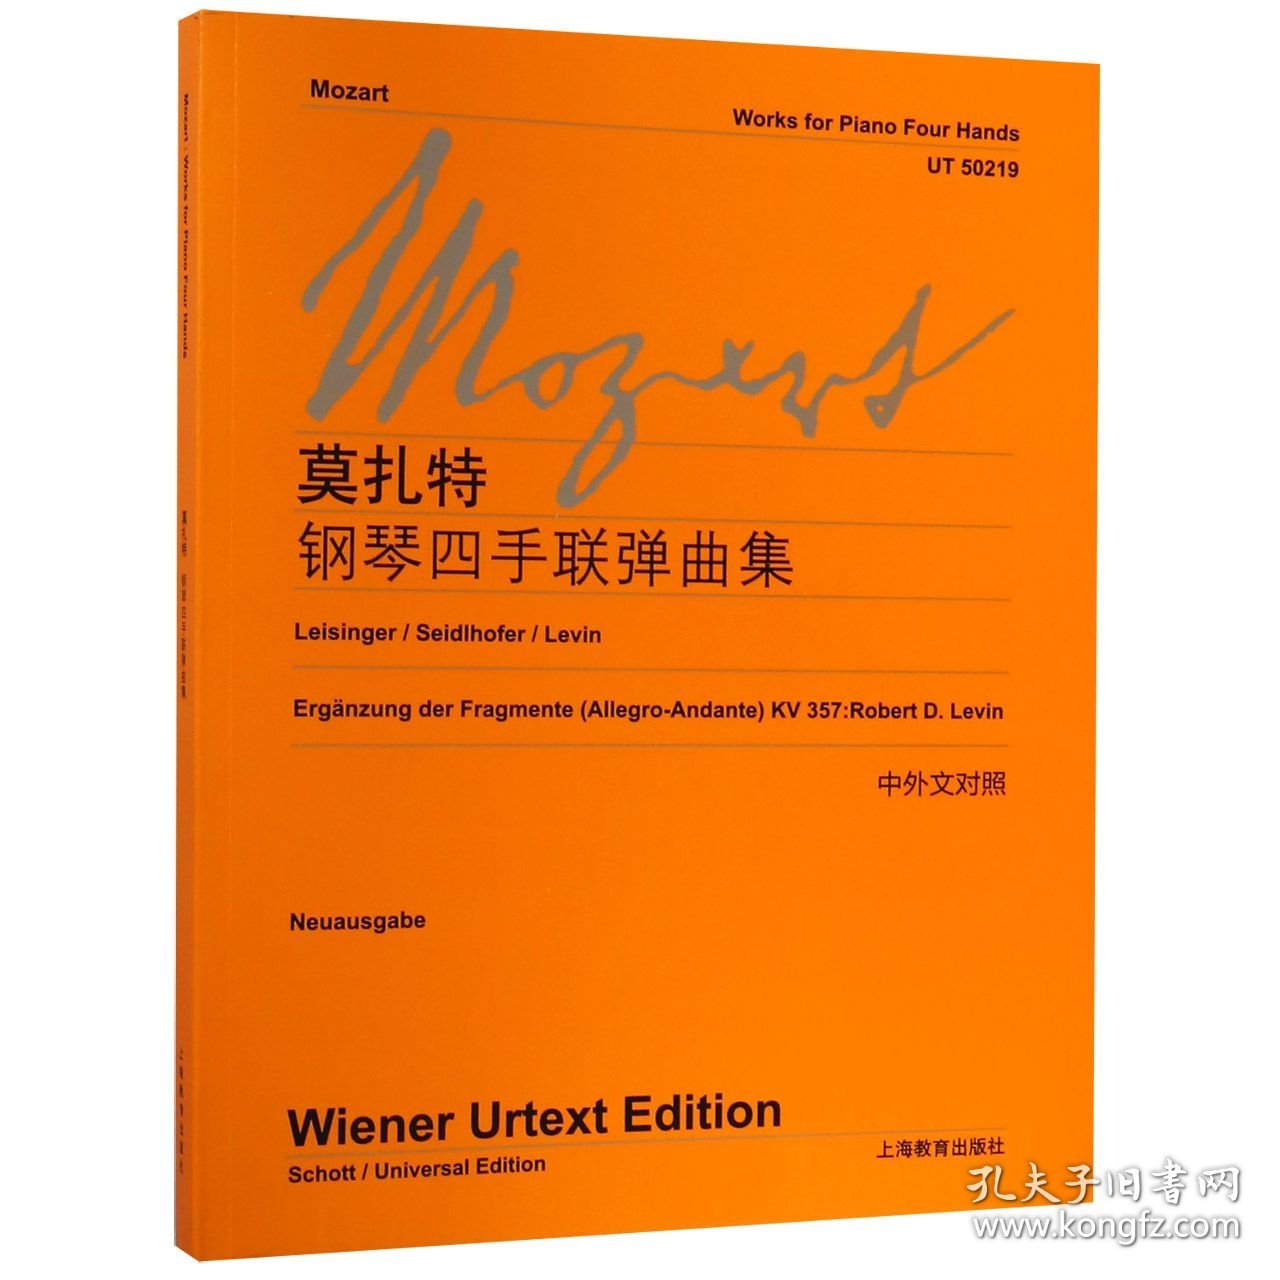 莫扎特钢琴四手联弹曲集(中外文对照) 维也纳出版社 9787544429603 上海教育出版社